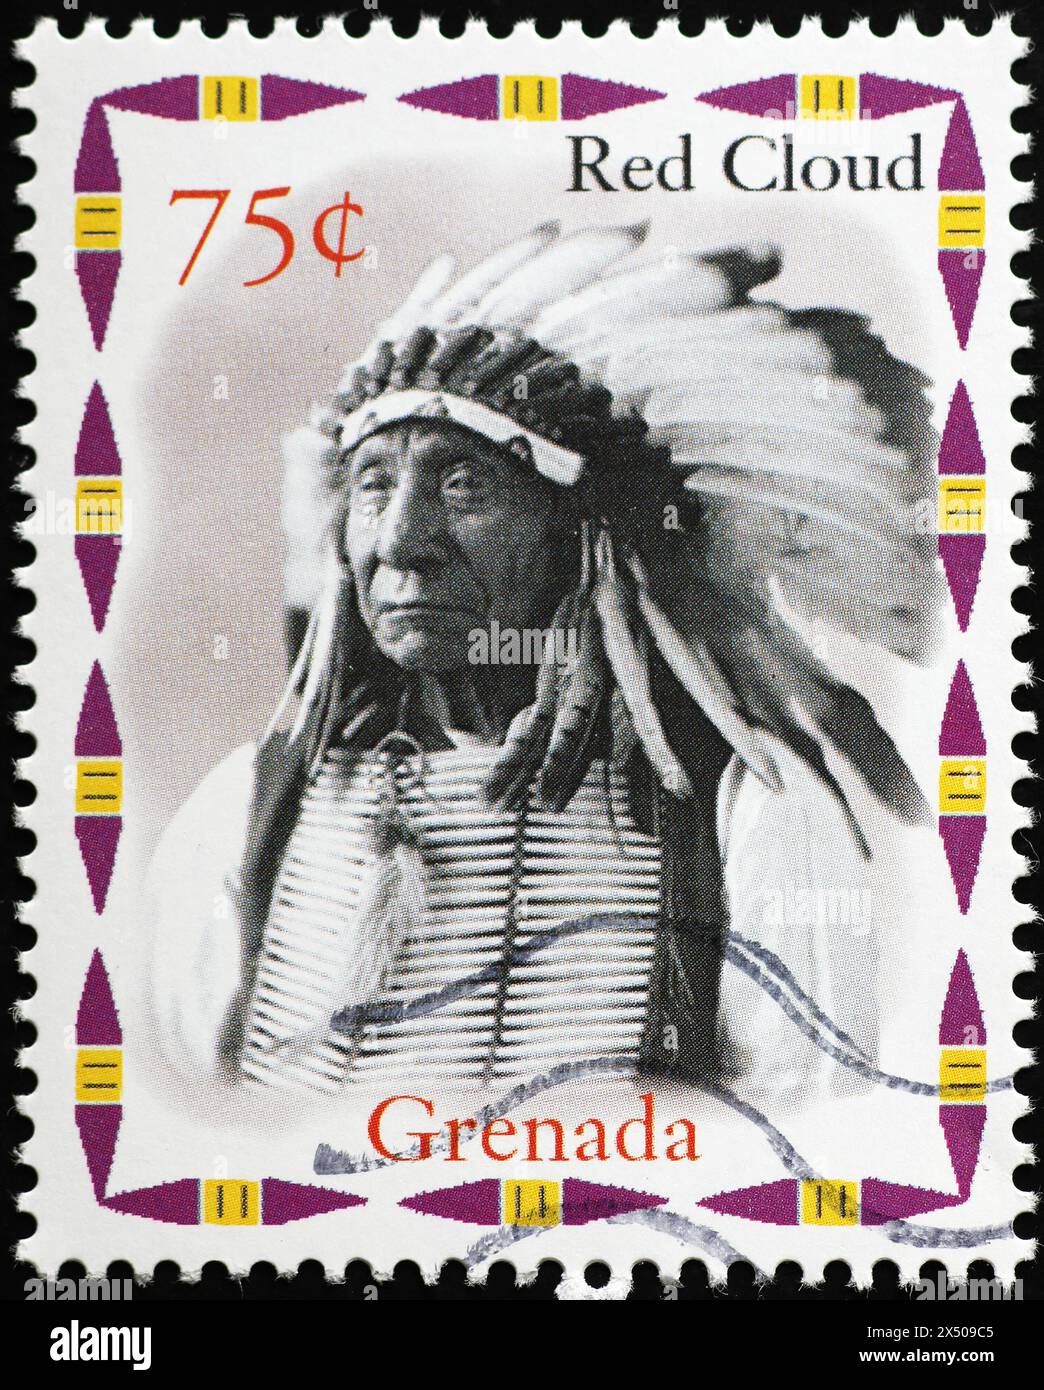 Le chef indien Red Cloud sur un timbre de Grenade Banque D'Images